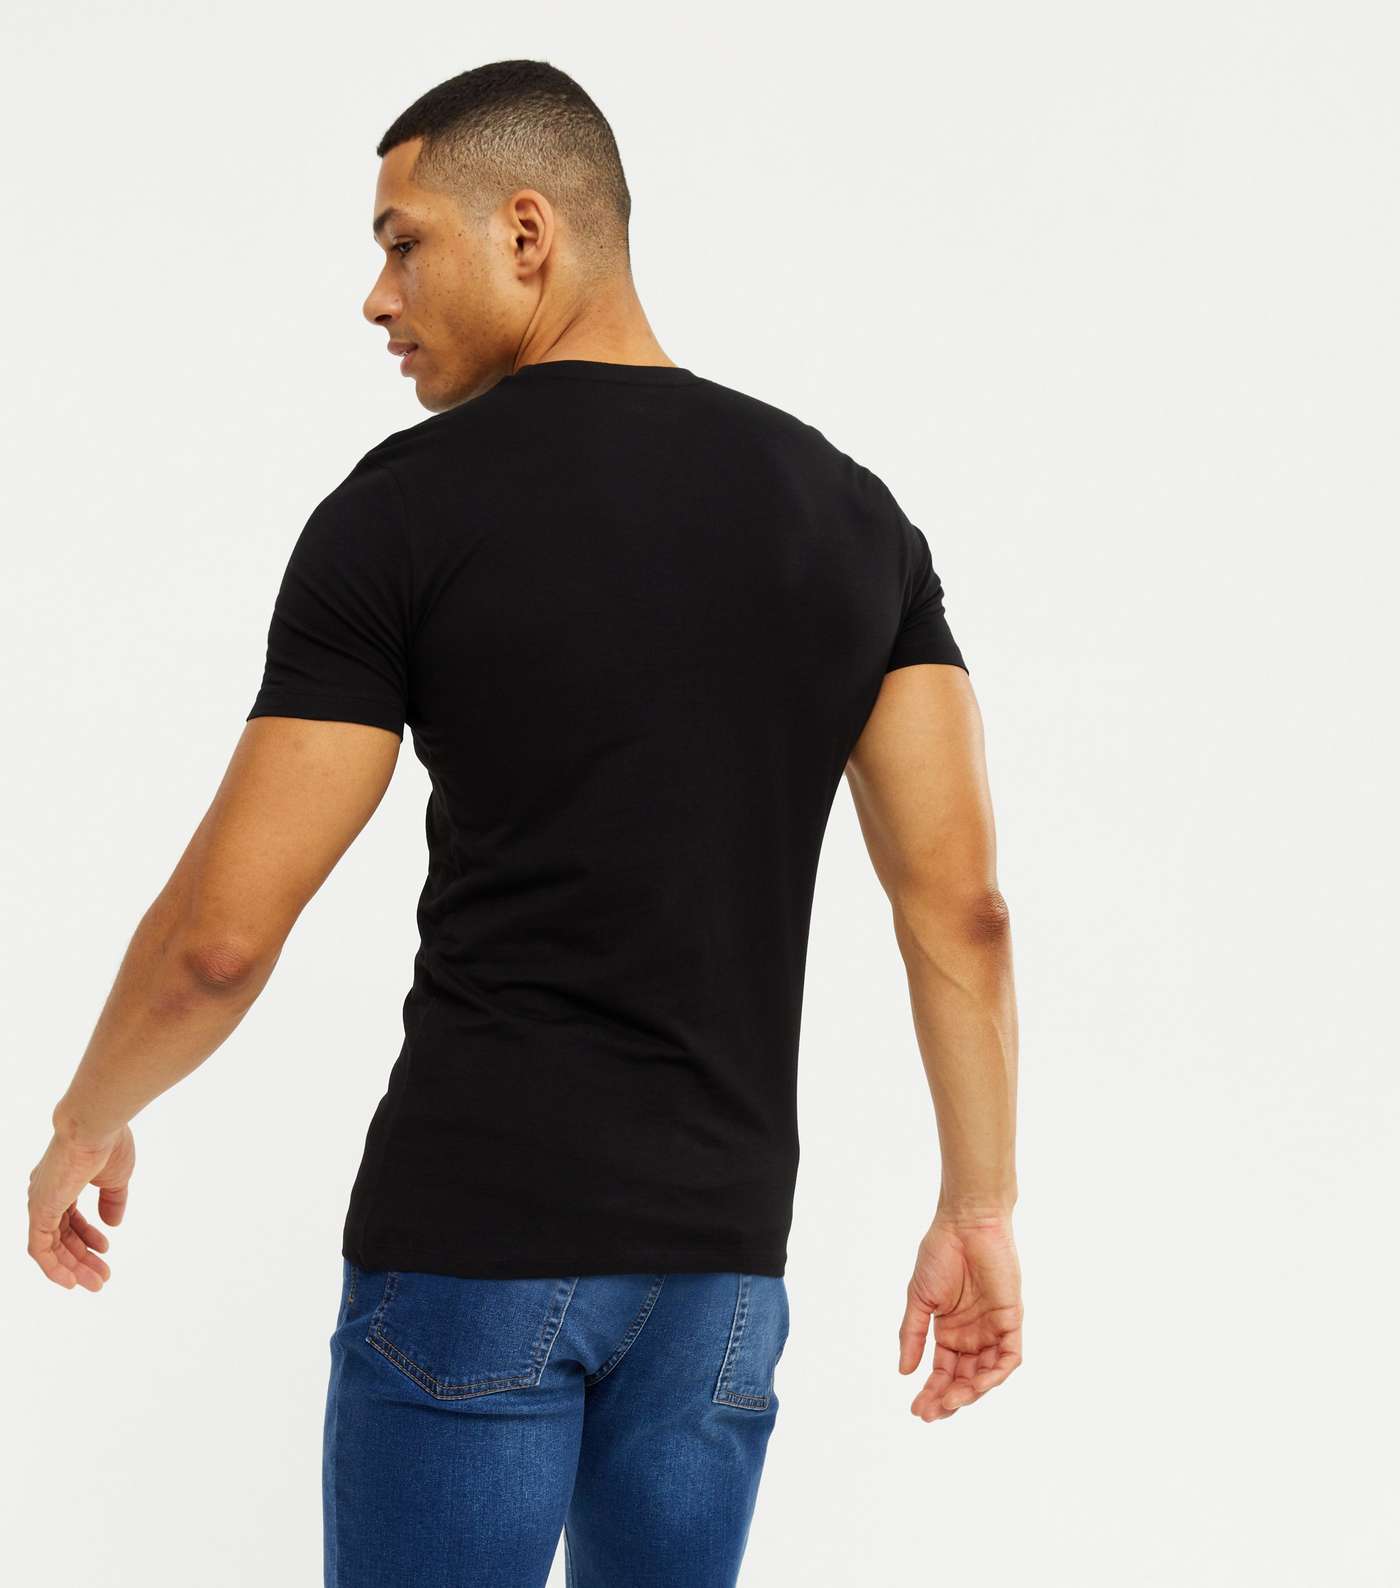 Black Muscle Fit Cotton T-Shirt Image 4